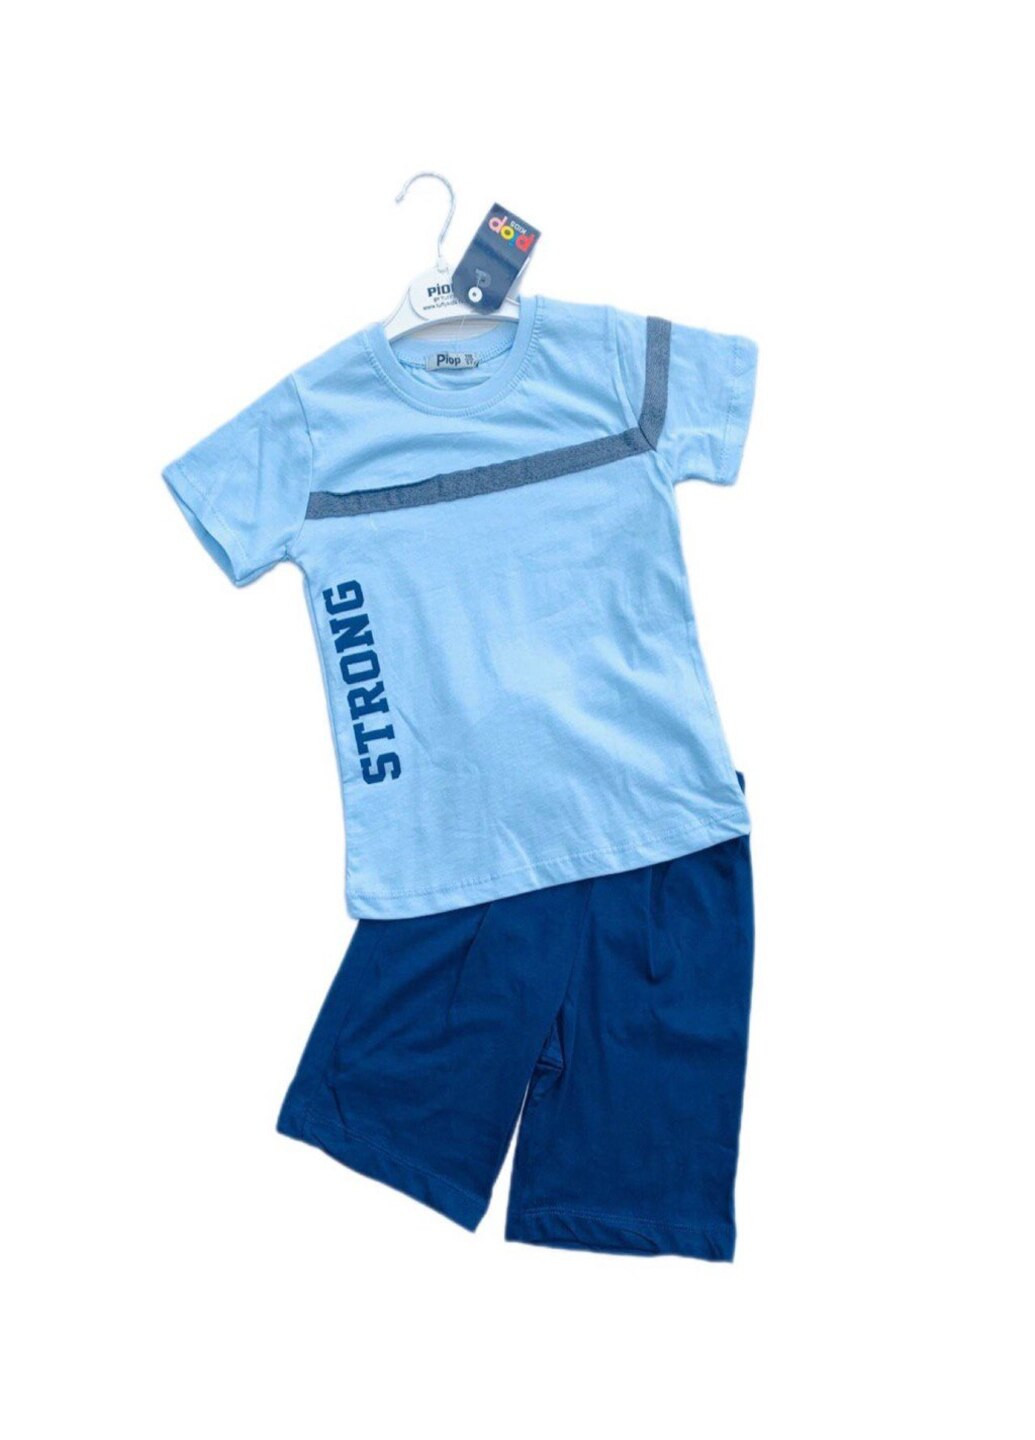 Голубой летний костюм шорты и футболка голубой цвет для мальчика Модняшки